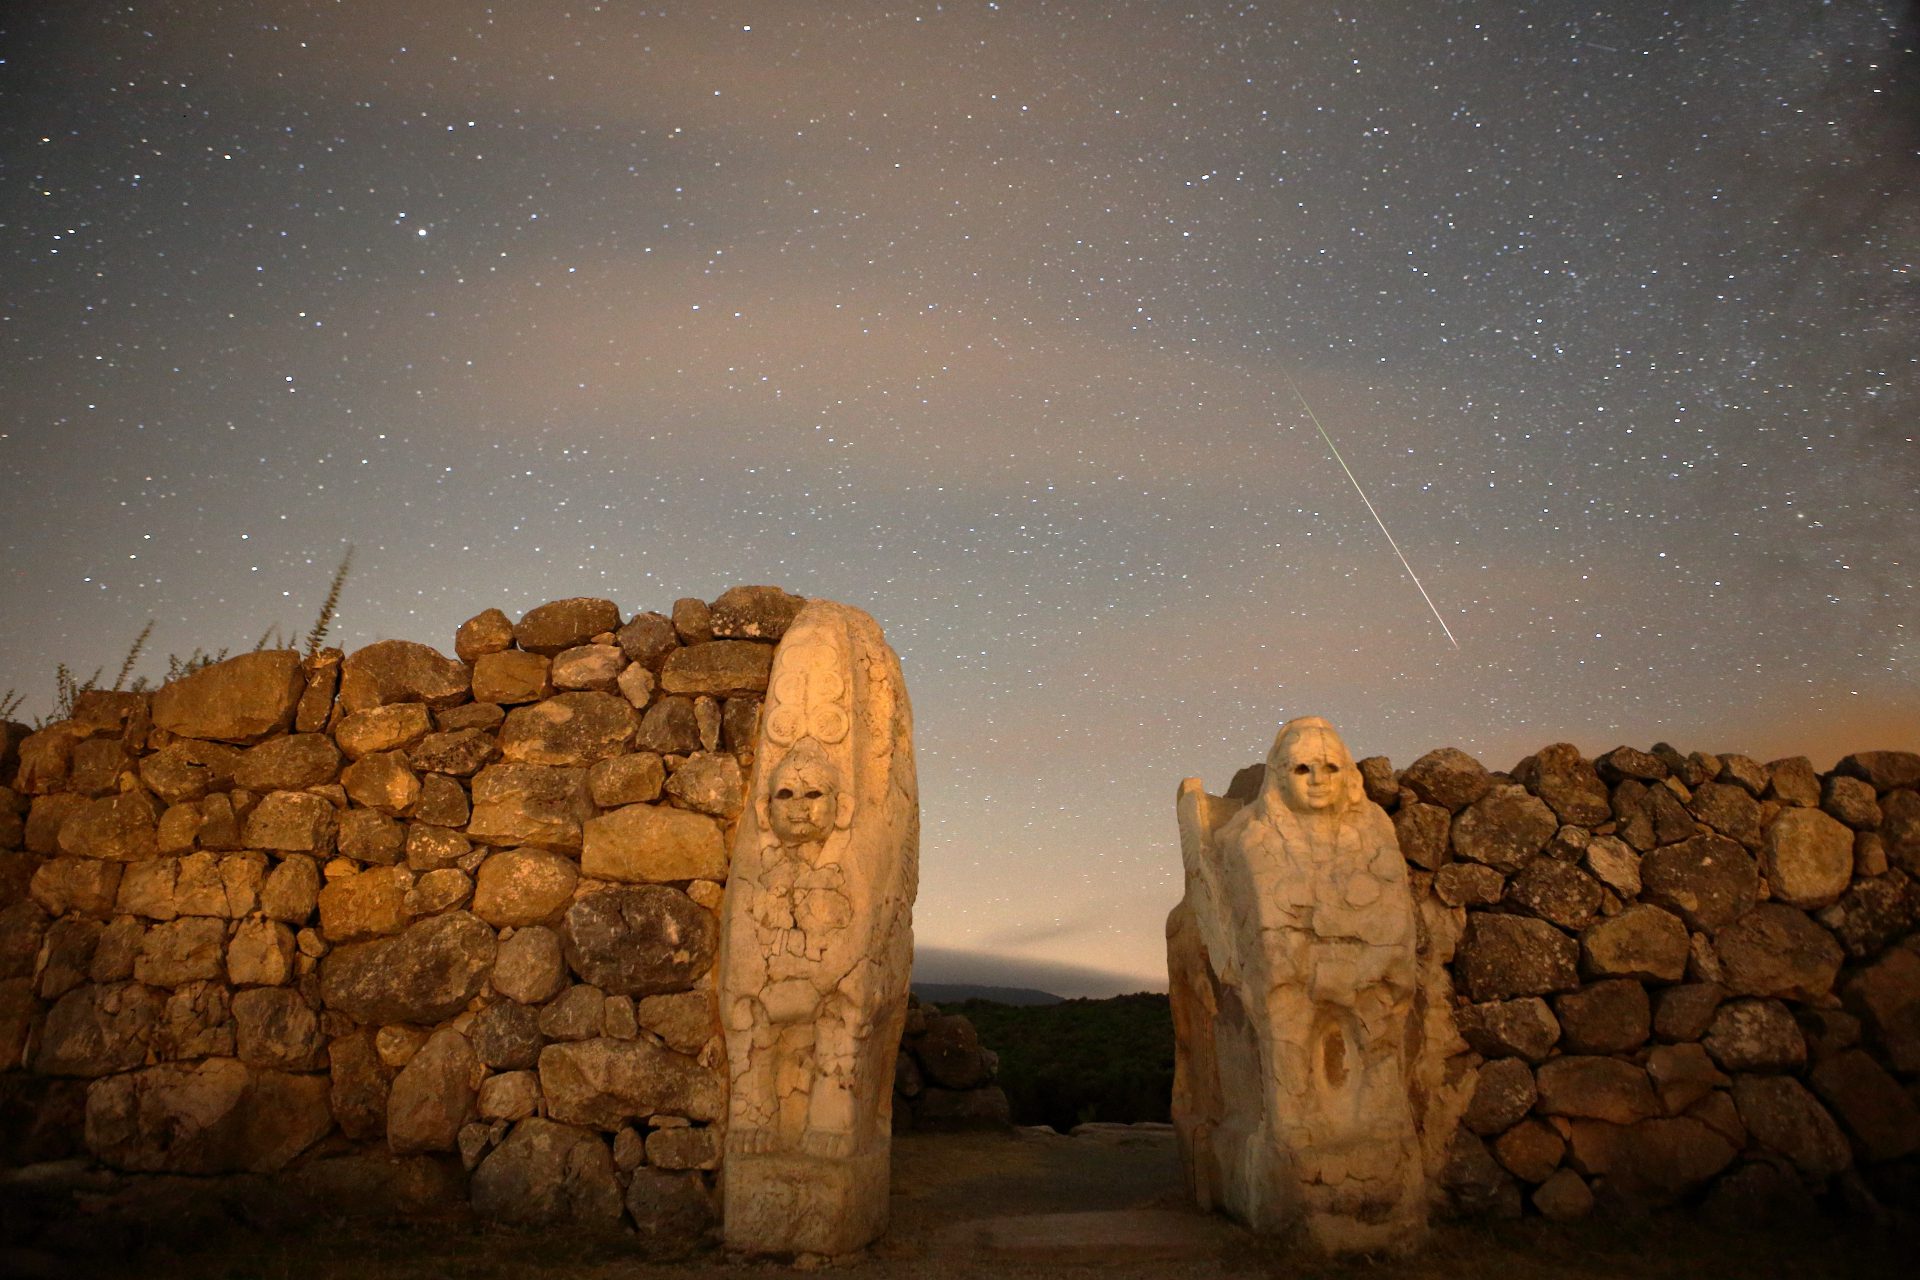 Garis meteor menonjol di langit di atas dinding batu dengan dua sosok diukir di batu.